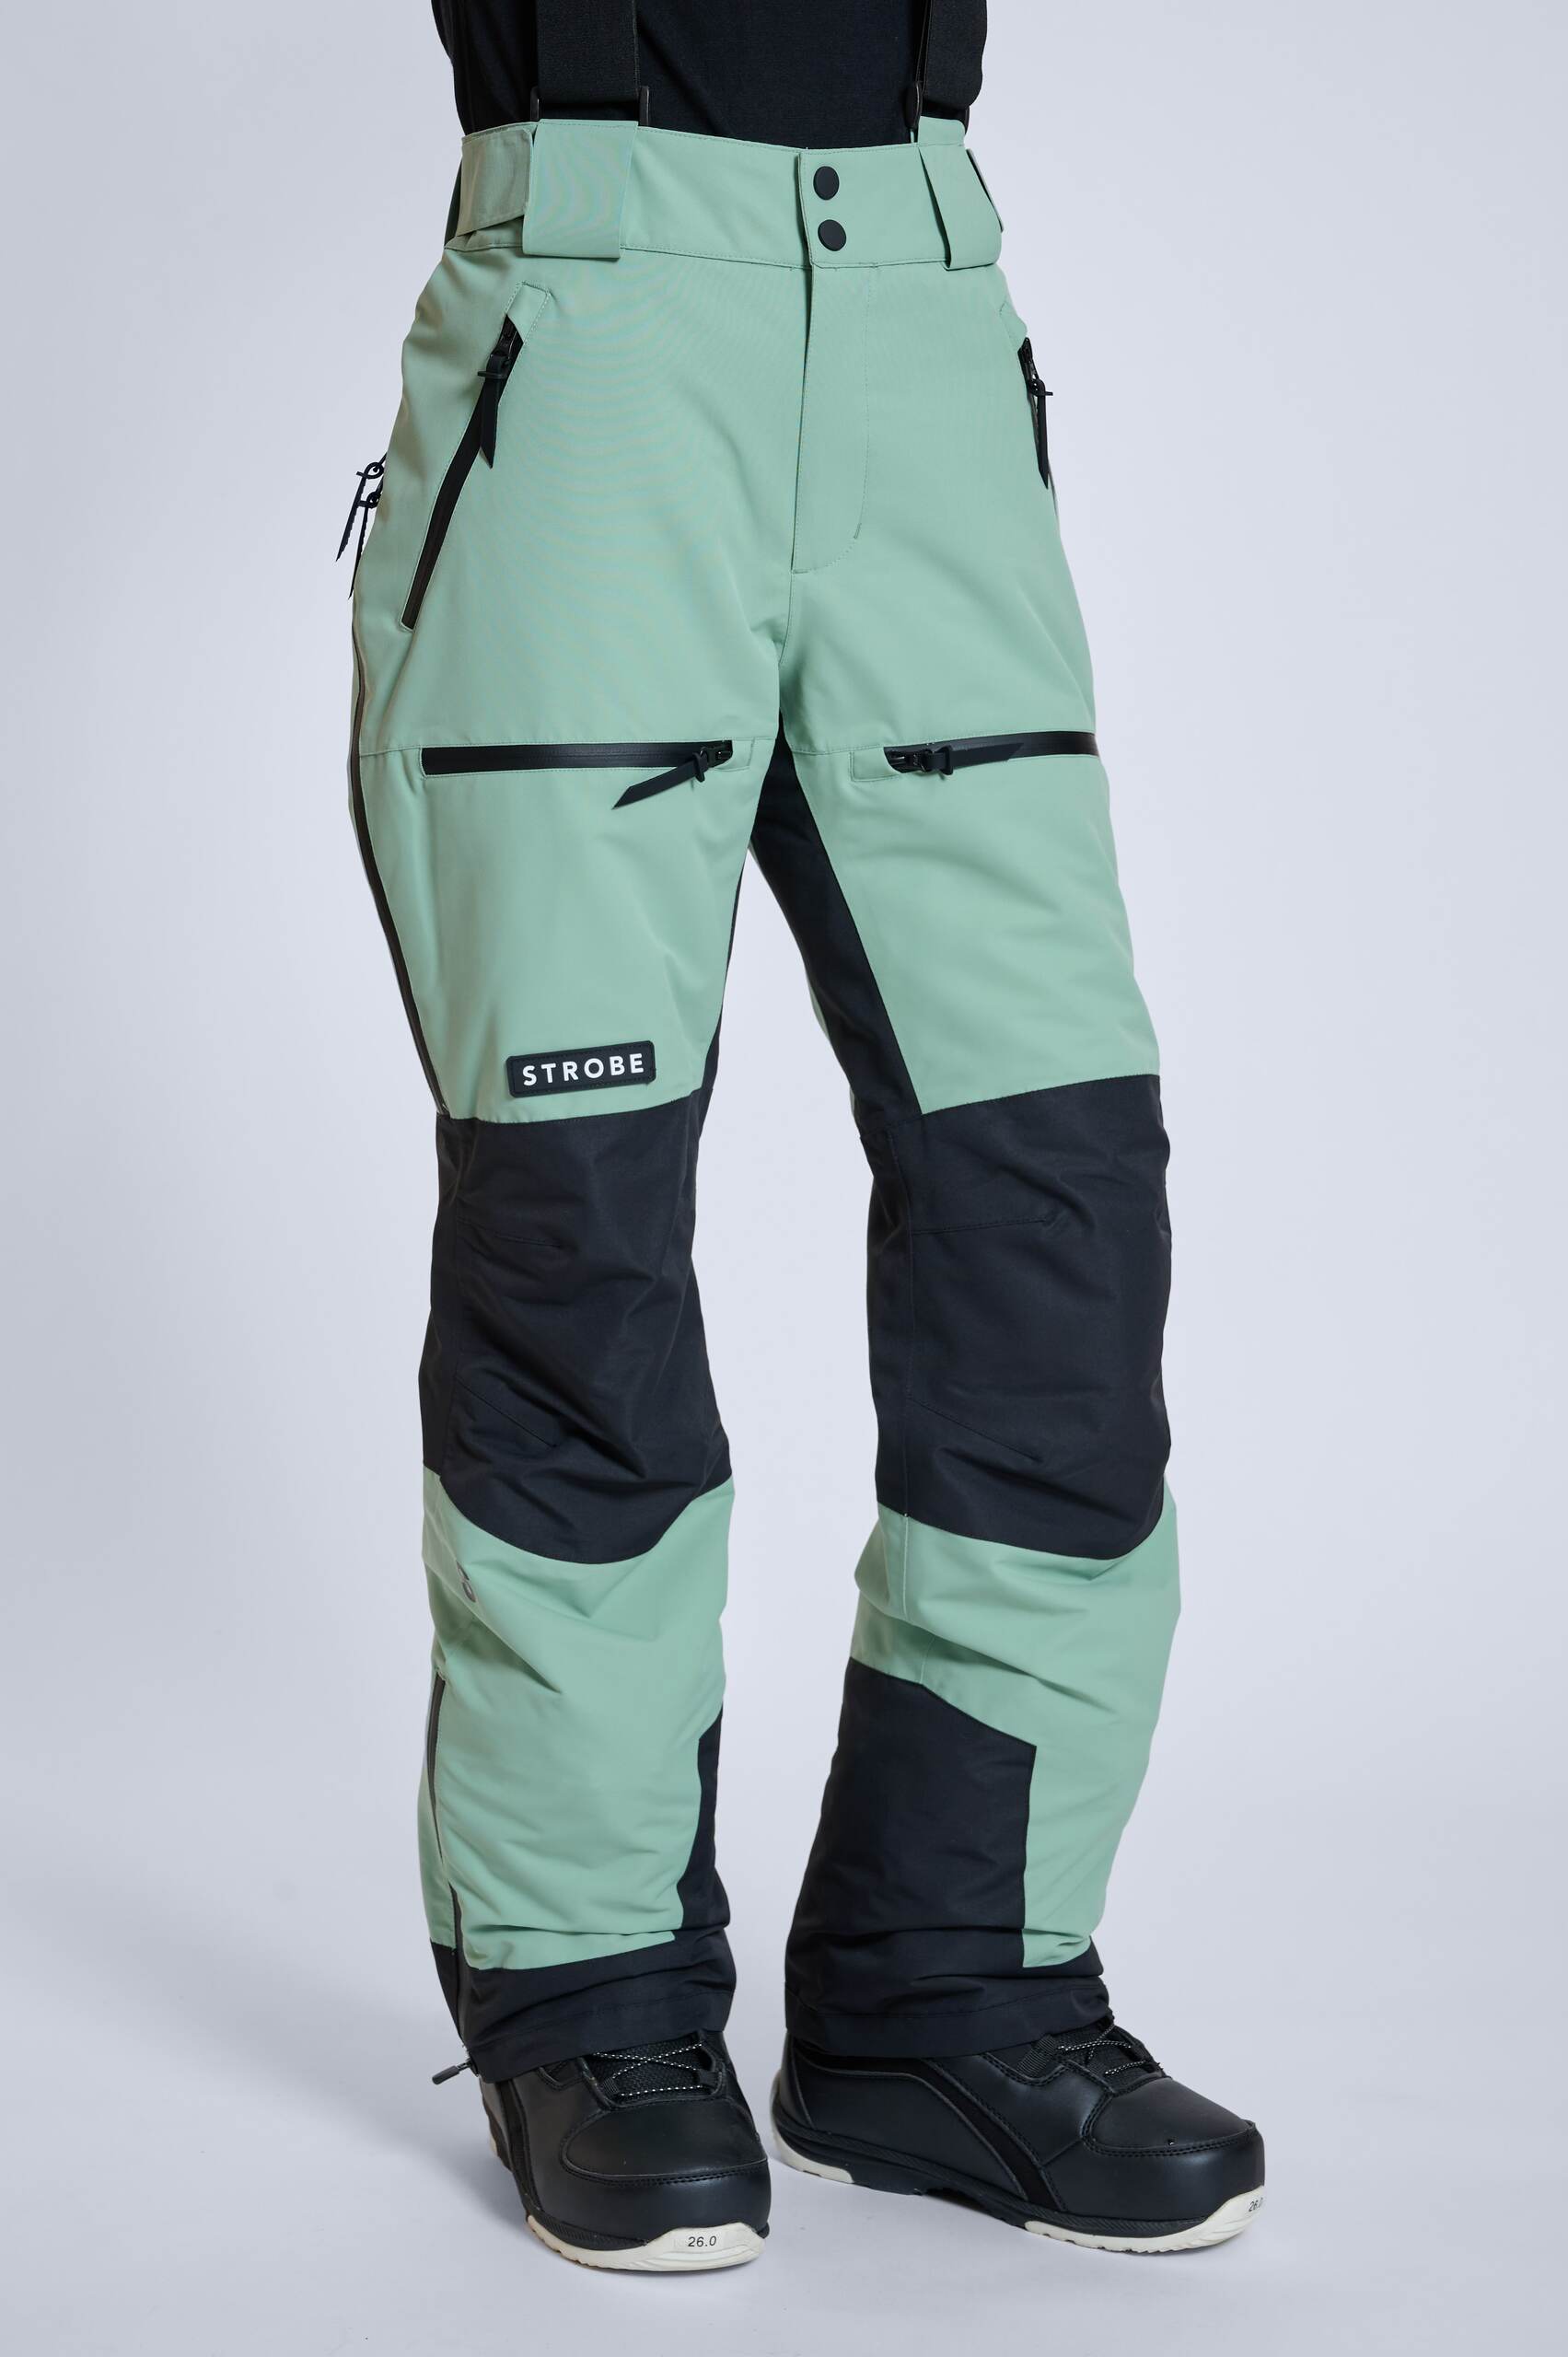 Lynx Ski Pants Dusty Green - Women's - Strobe